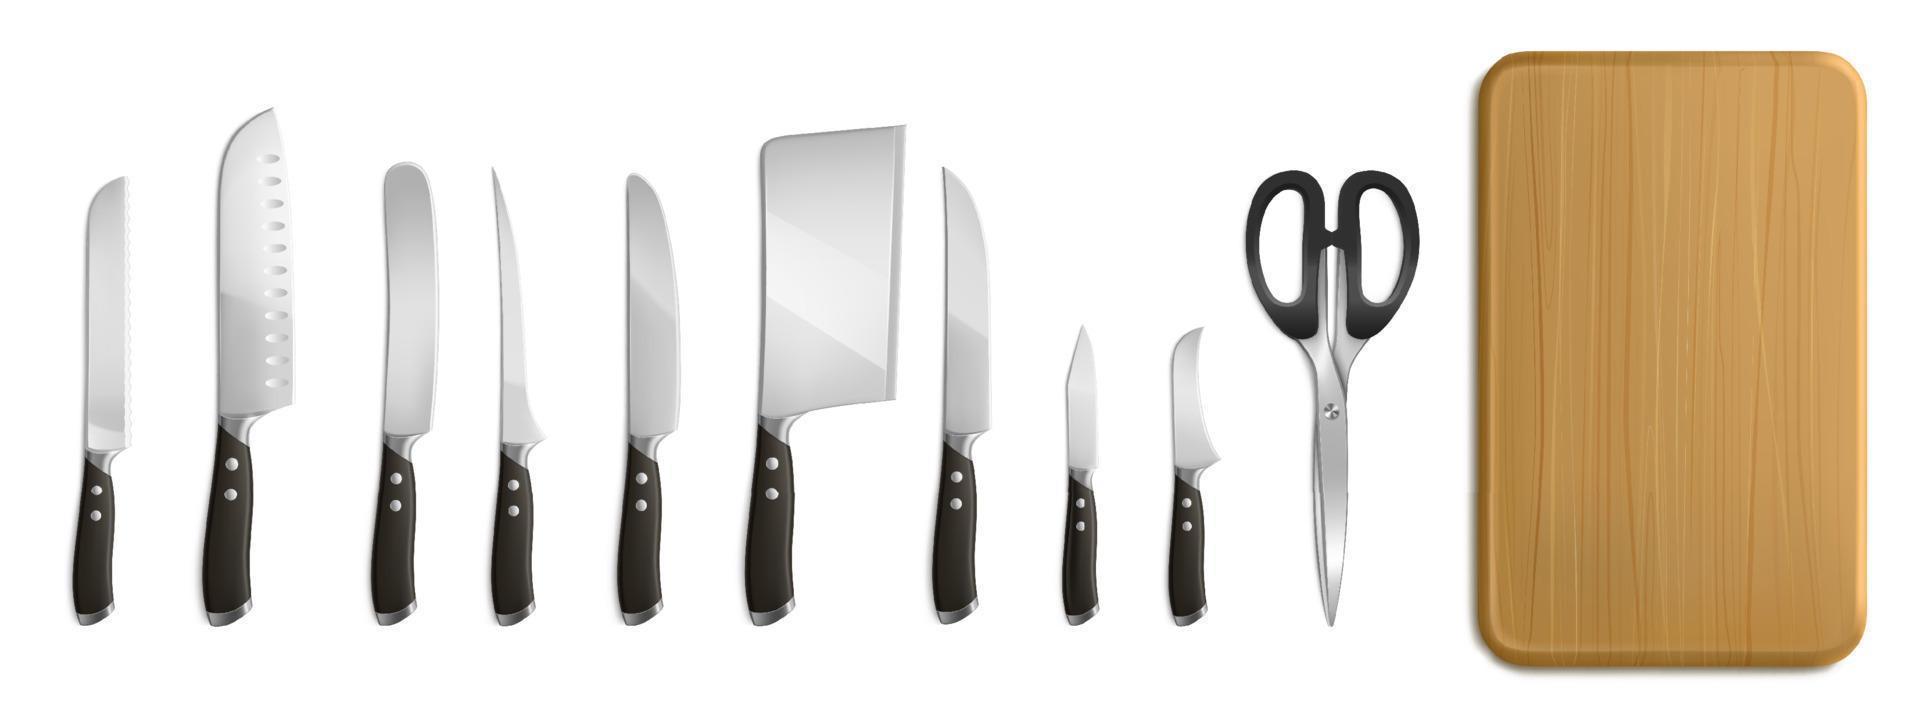 cuchillos de chef y carnicero, tabla de cortar, tijeras vector